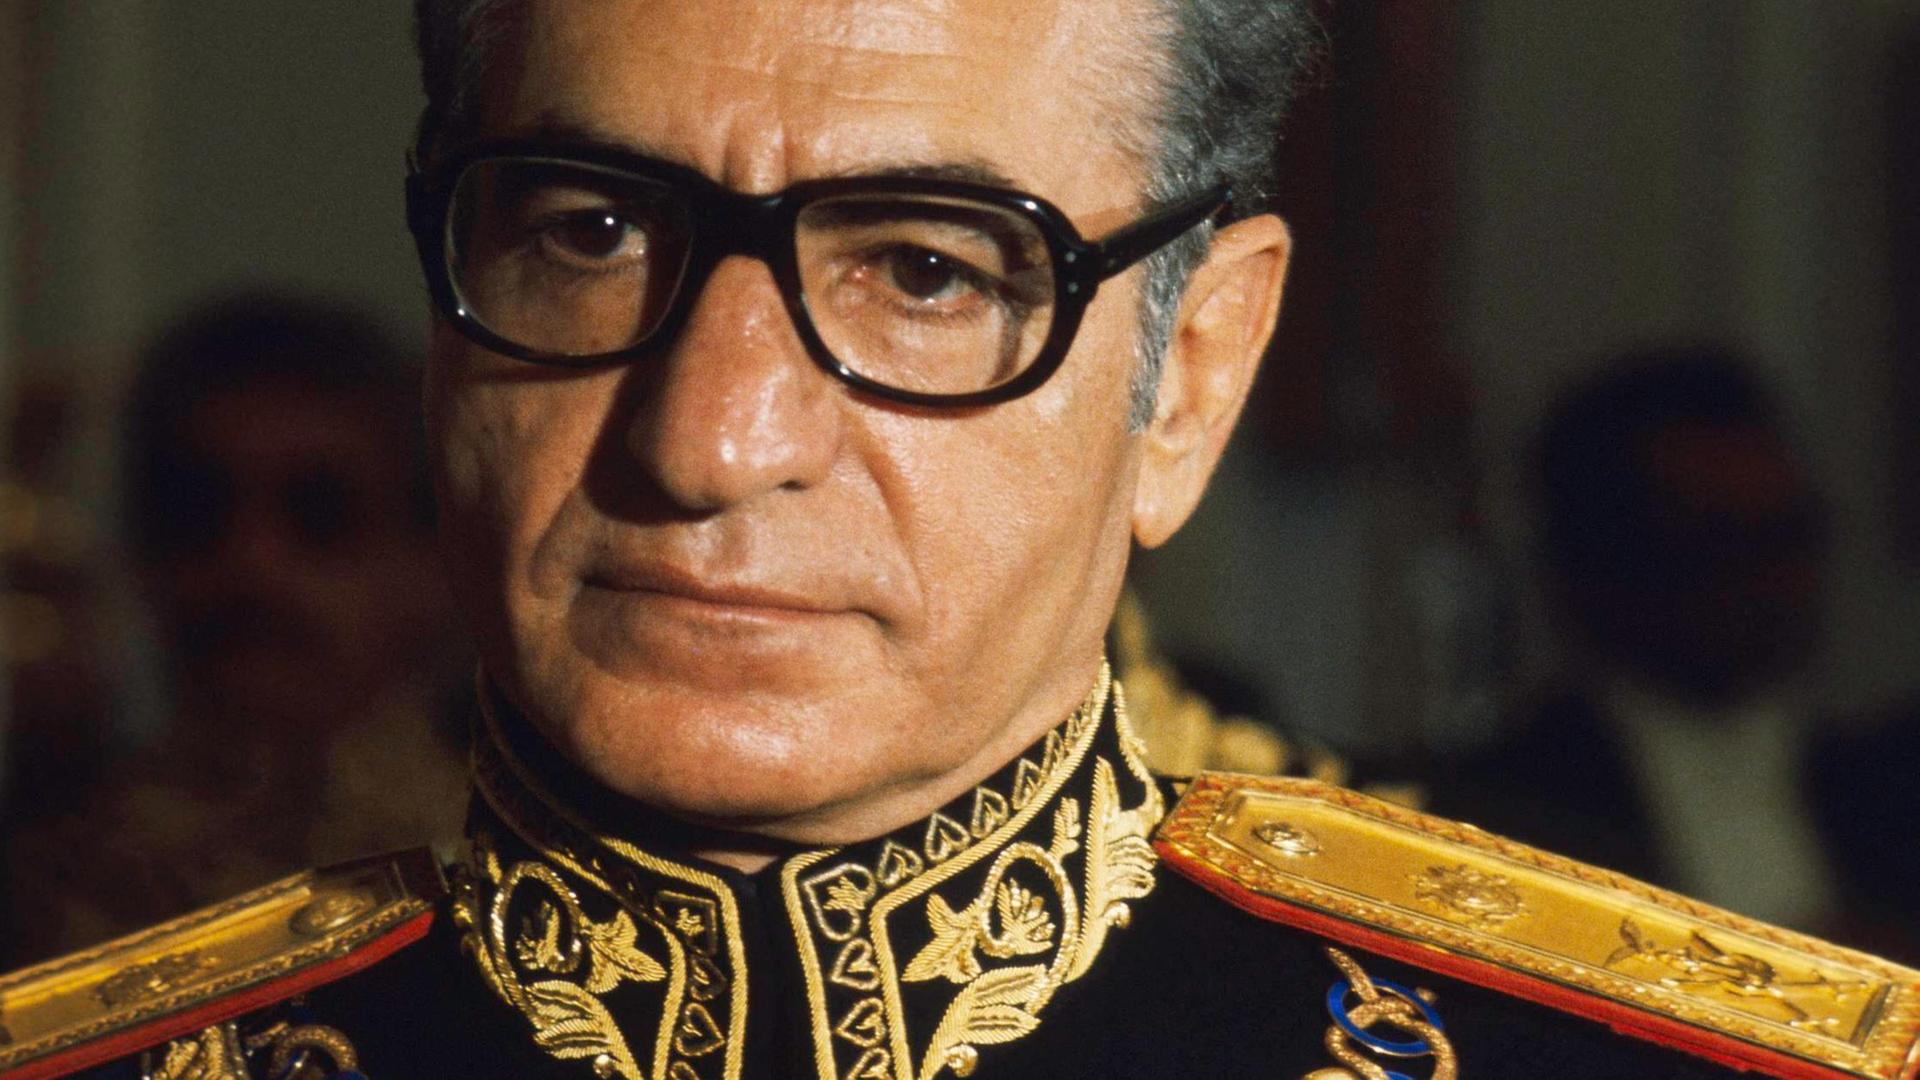 Der Schah Mohammad Reza Pahlavi in Uniform, 1972.